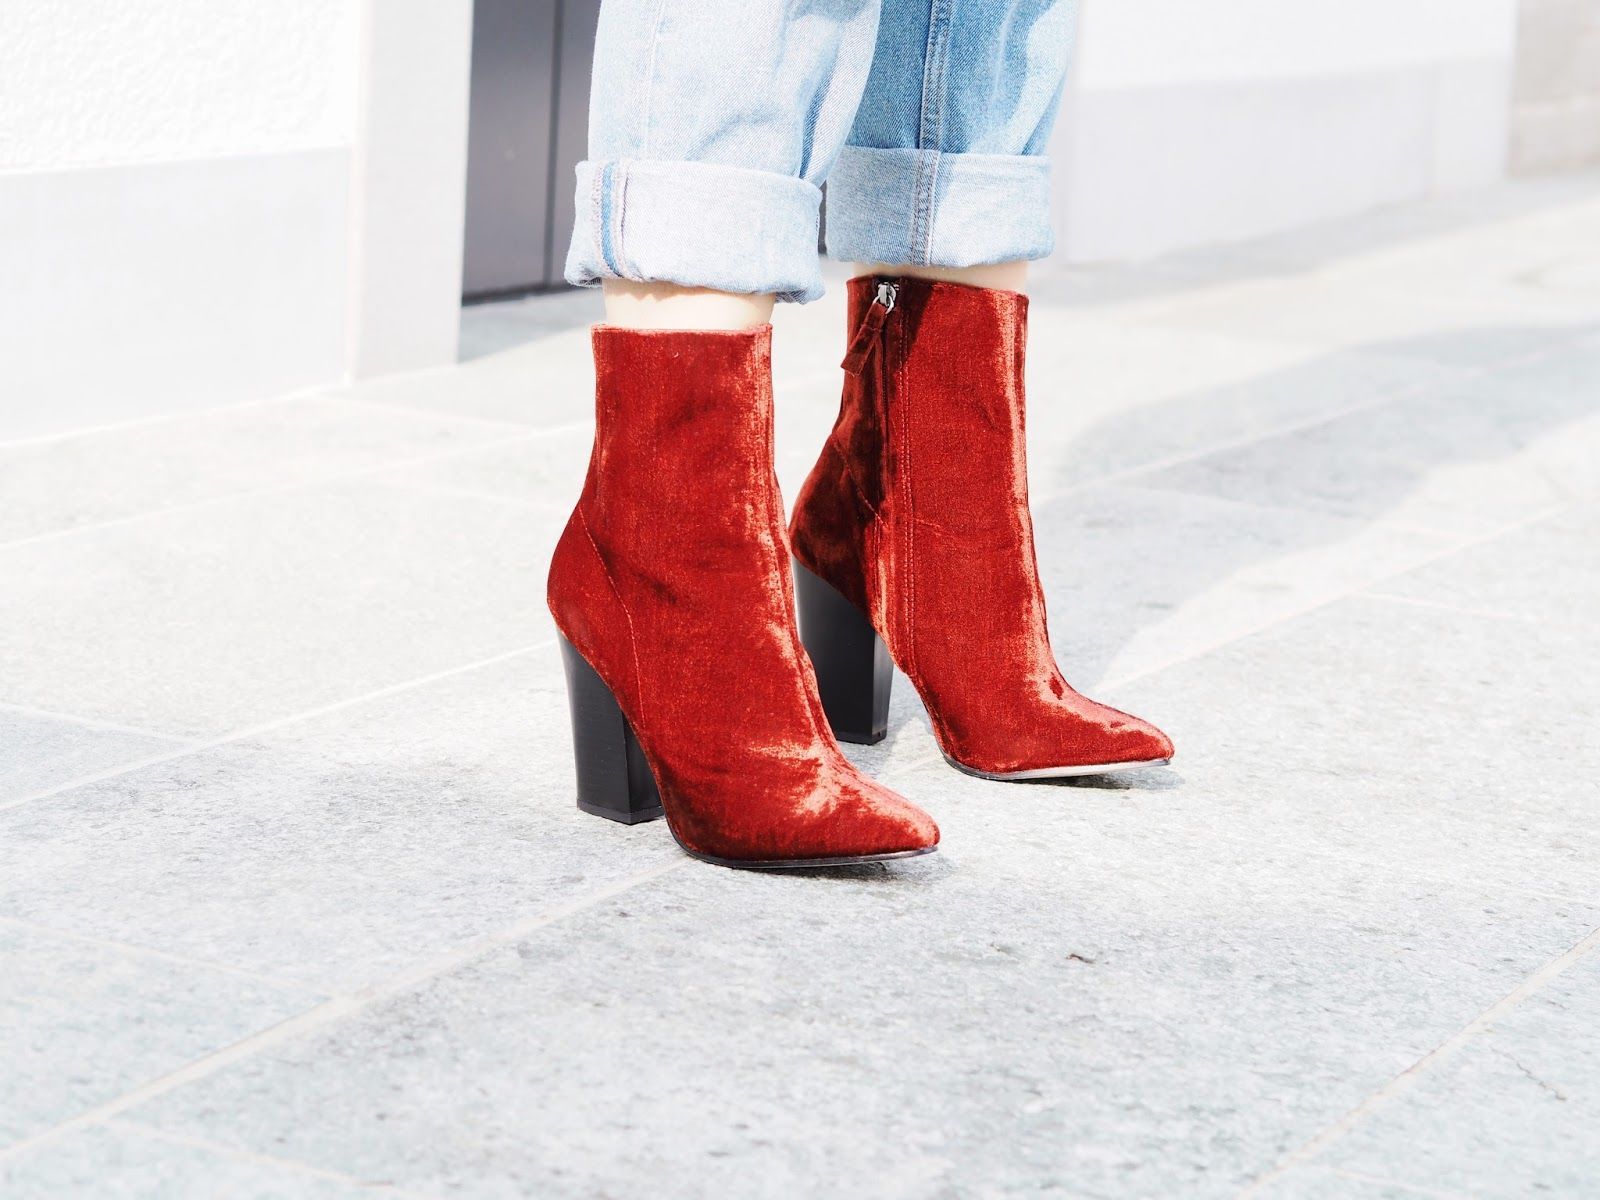 6. The mini heeled boots buat penampilan semakin trendi